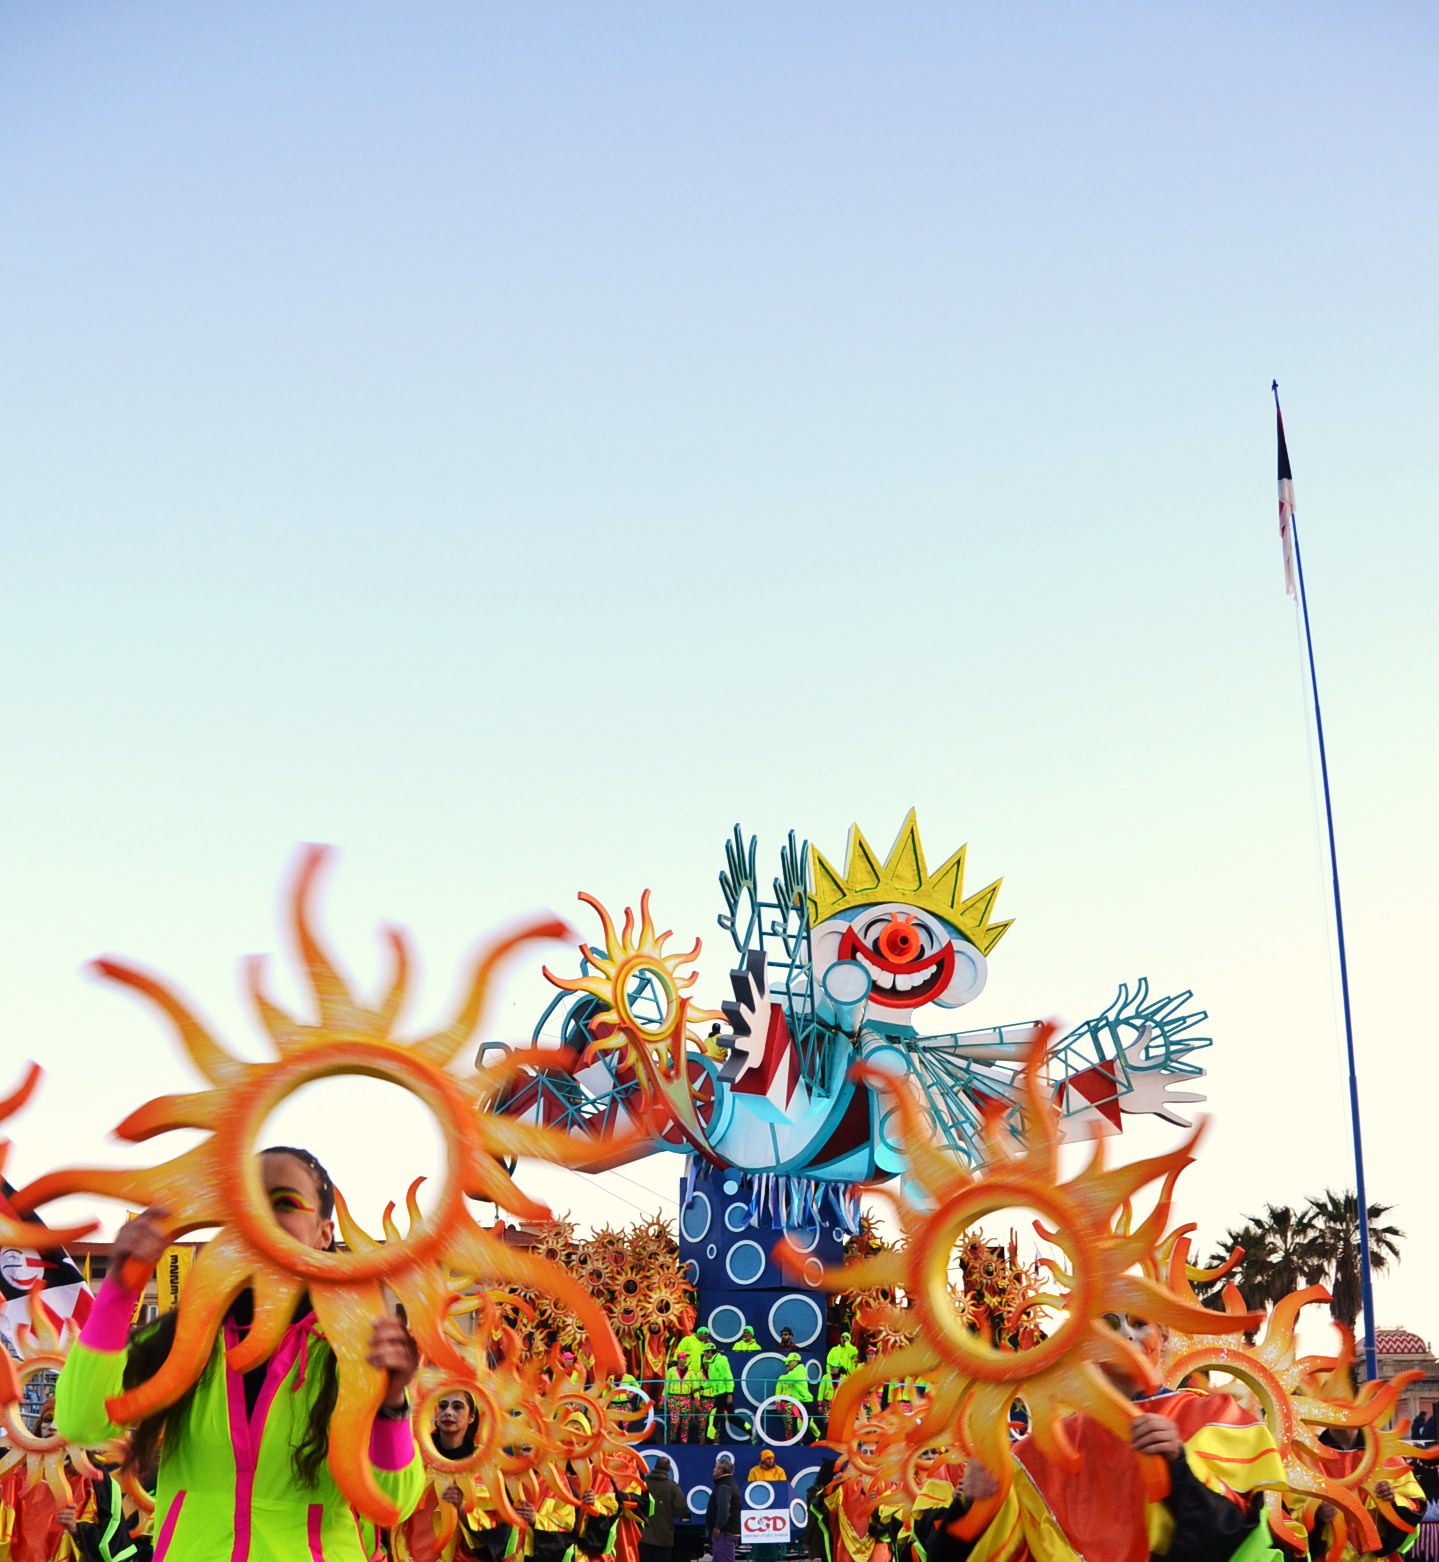 Carnevale di Viareggio 2015, tutti gli appuntamenti dall’11 al 17 febbraio